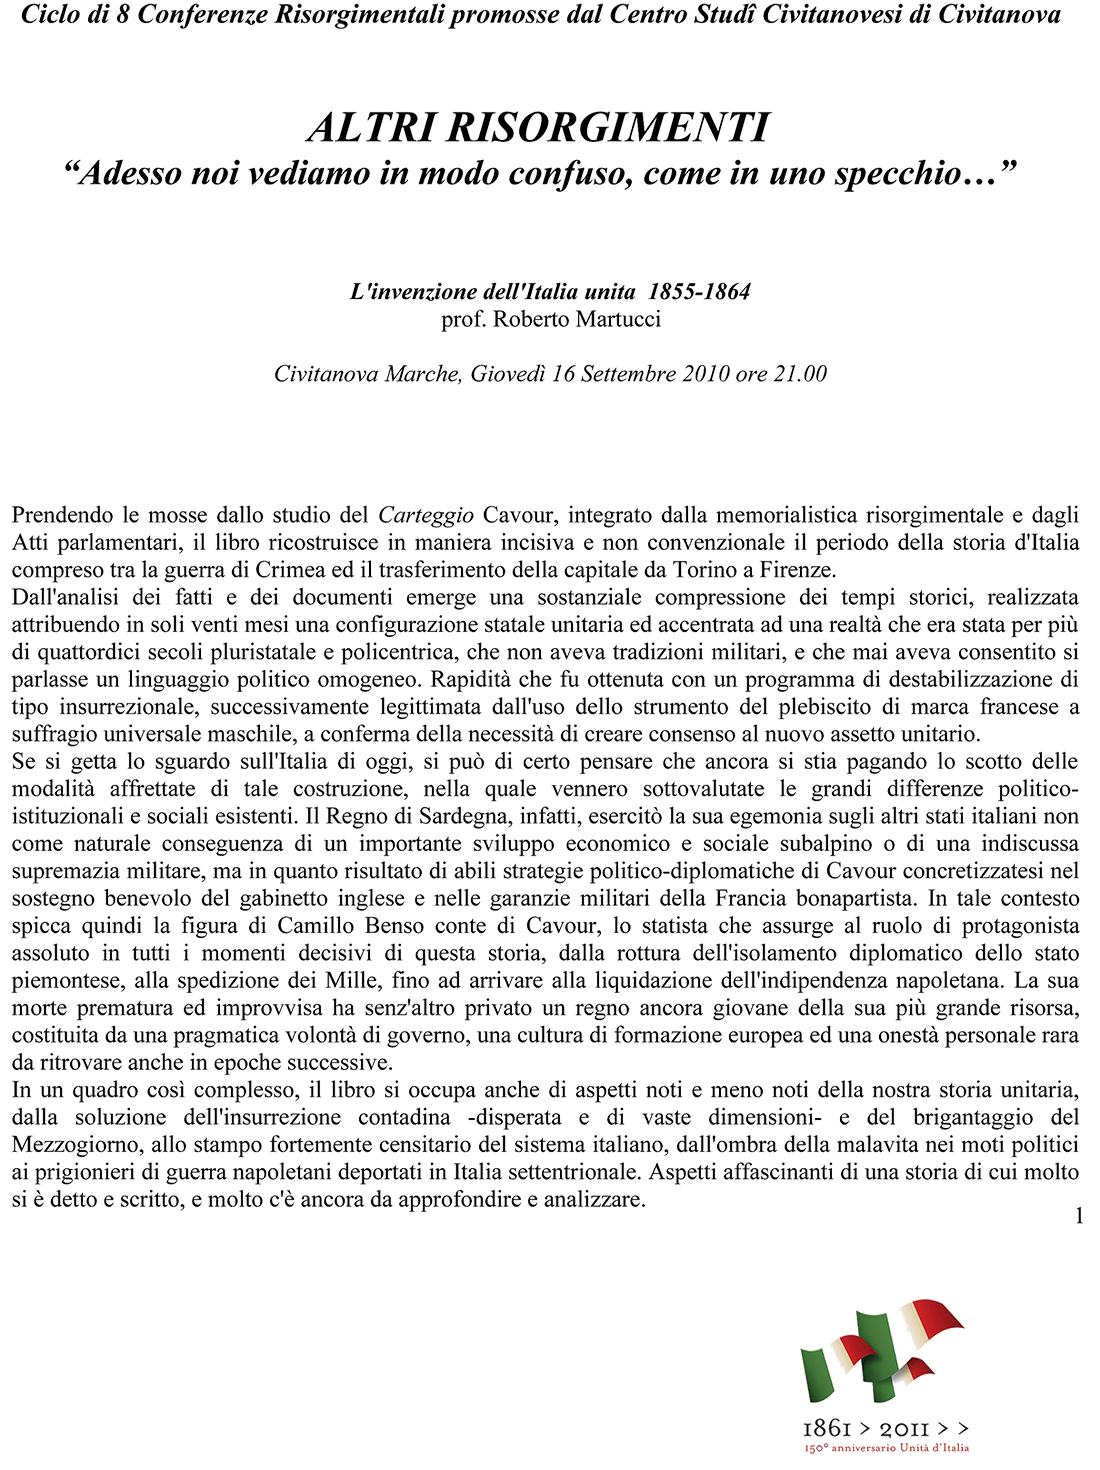 Roberto Martucci -Abstract- Conferenza: L'invenzione dell'Italia Unita (1855 - 1864).